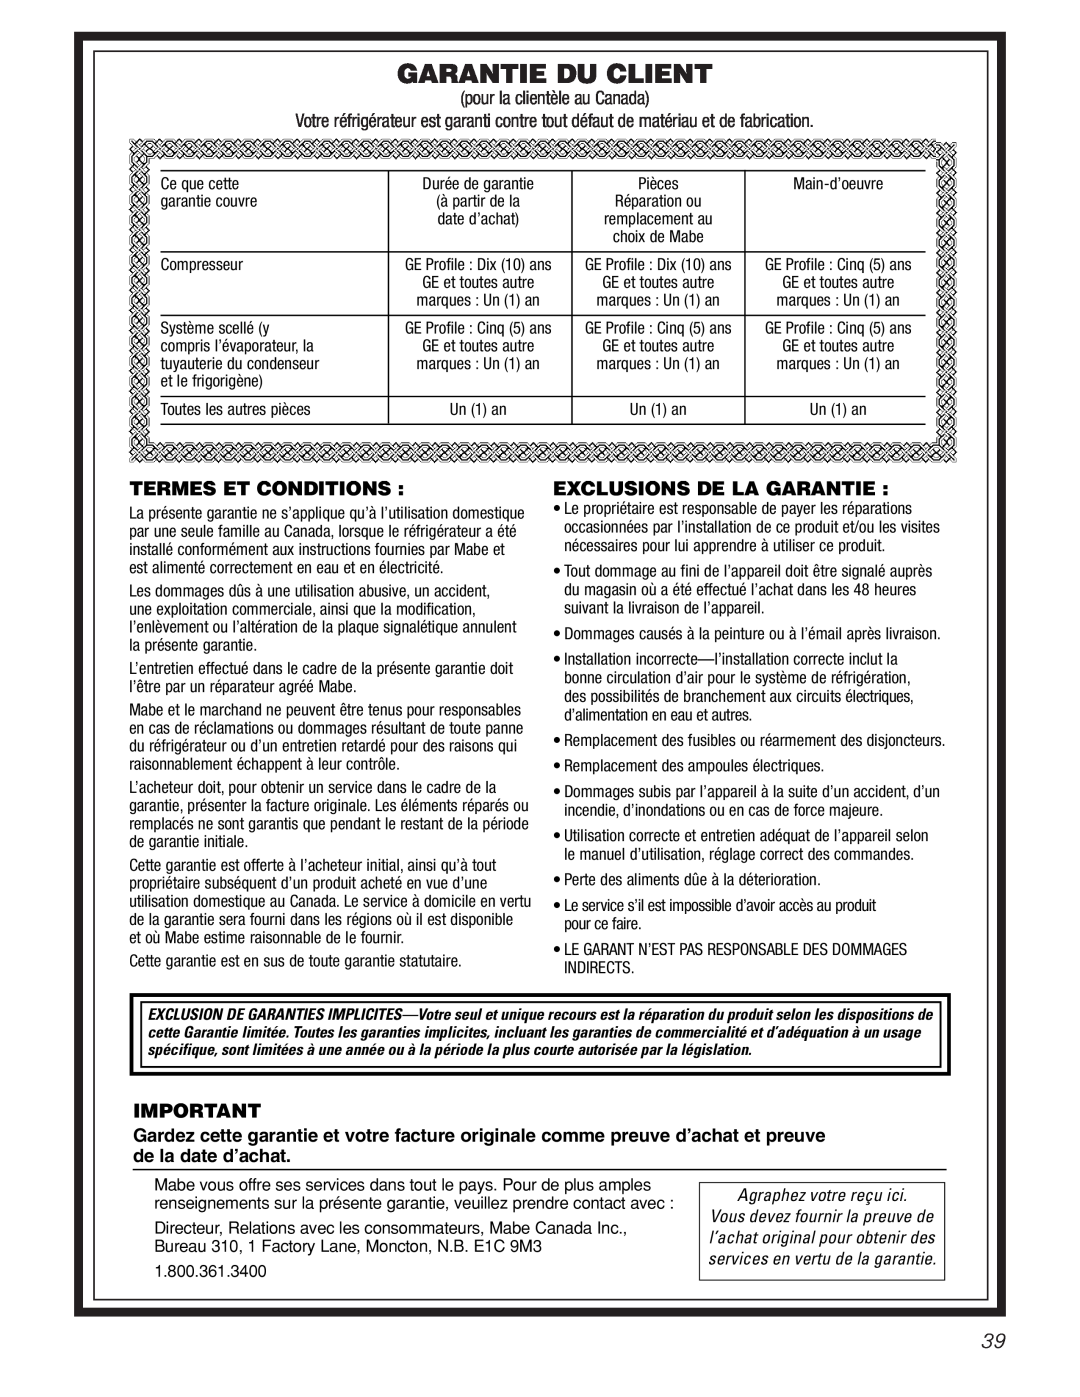 GE 20 manuel dutilisation Garantie Du Client, Termes Et Conditions, Exclusions De La Garantie, pour la clientèle au Canada 